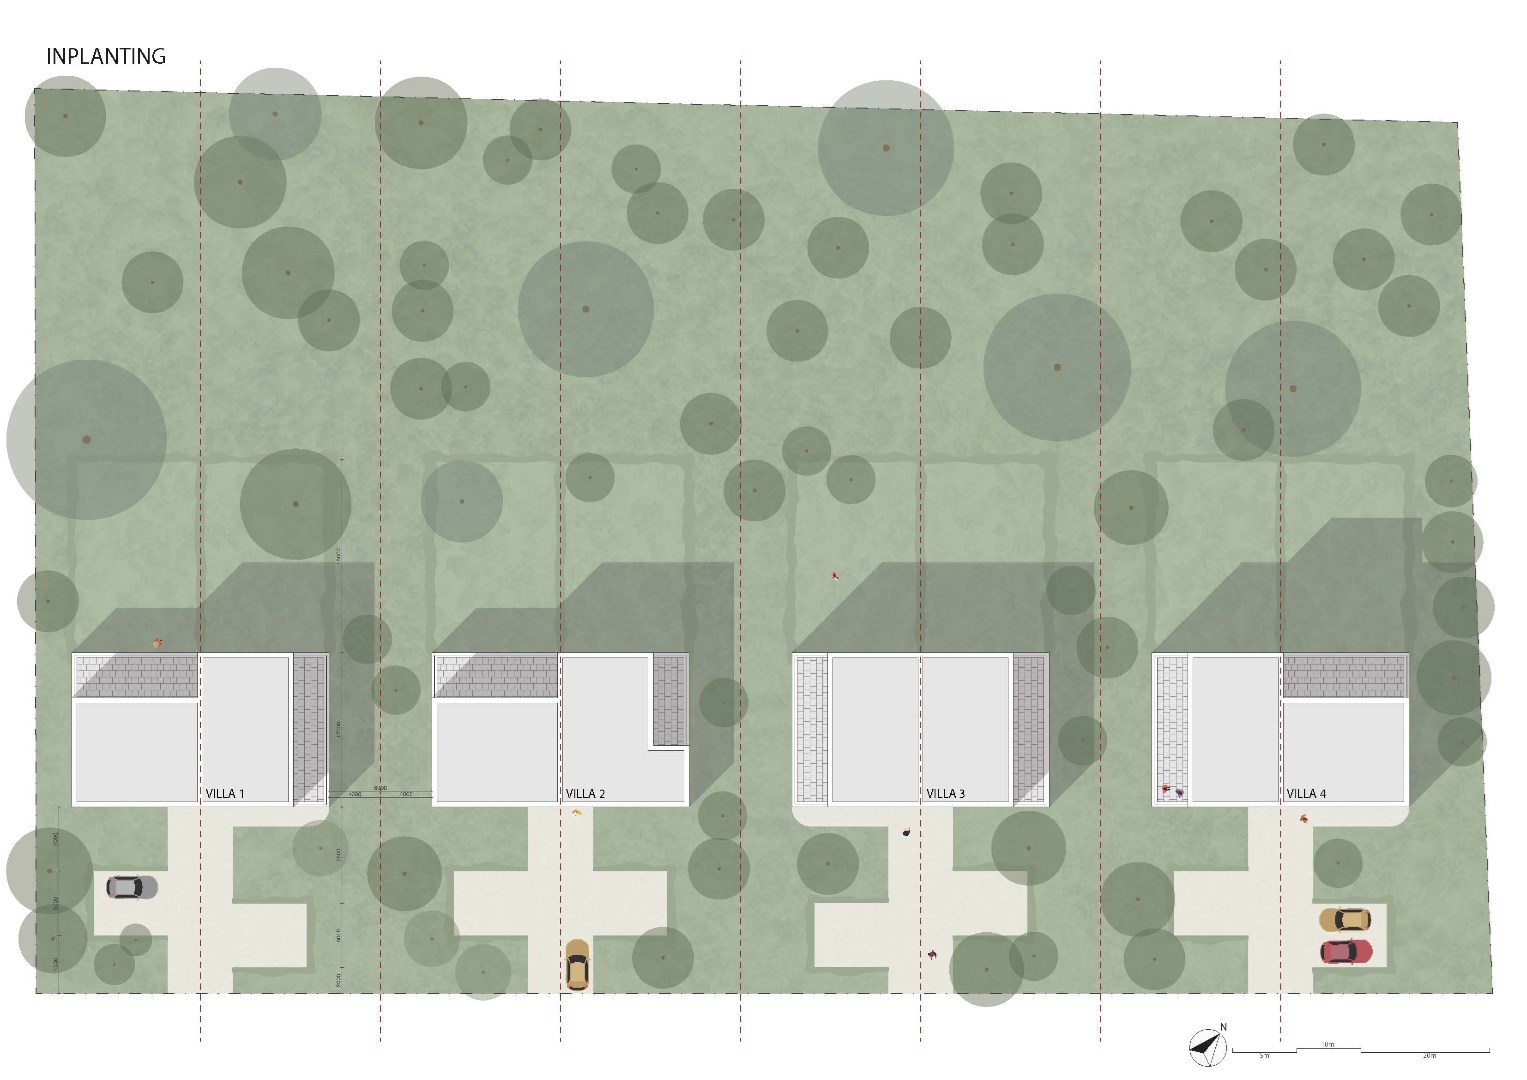 Knappe bouwgrond voor een drie-gevel villa met achterliggend bos 